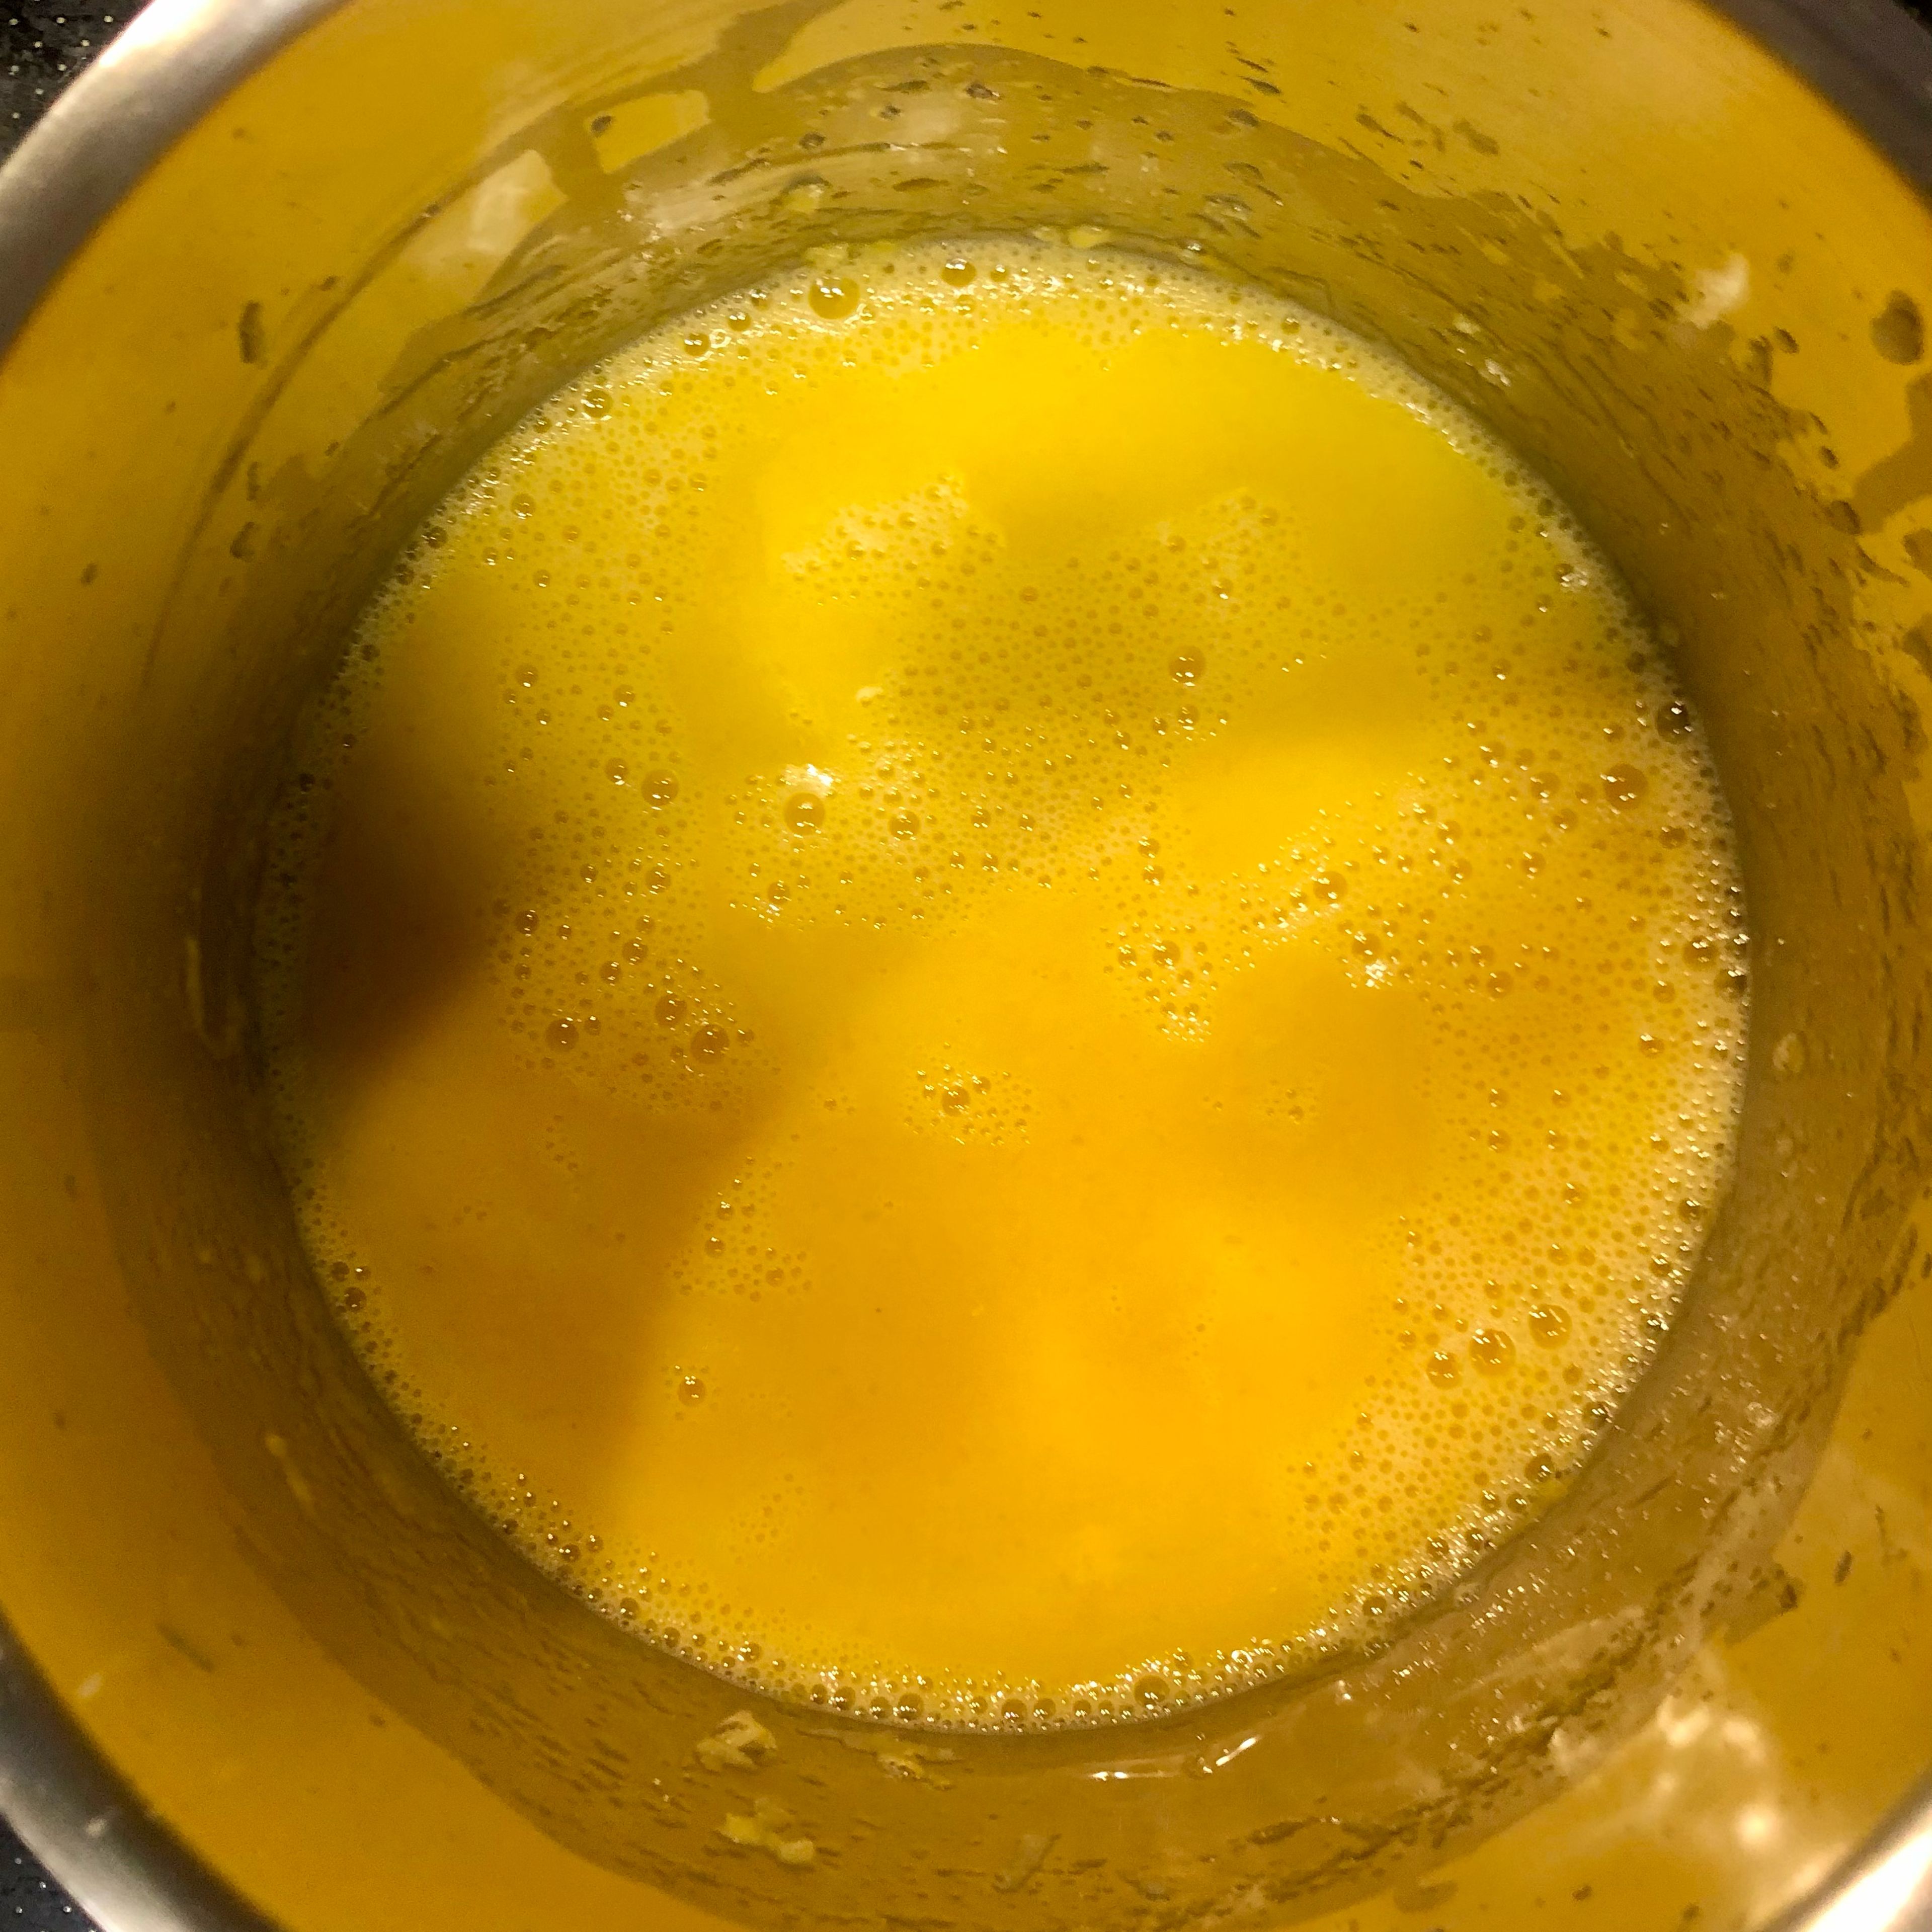 Nun werden drei Eigelbe und frisch gepresster Zitronensaft mit dem Schneebesen untergerührt. Jetzt wird 10 Minuten lang unter ständigem Rühren bei kleiner bis mittlerer Hitze der Pudding gekocht, bis er dickflüssig und samtig ist. Wenn dies zutrifft, wird er vom Herd genommen und 1 EL kalte Butter sowie 1/2 TL Vanilleextrakt werden mit rein gerührt. Danach muss der Pudding vollständig auskühlen.